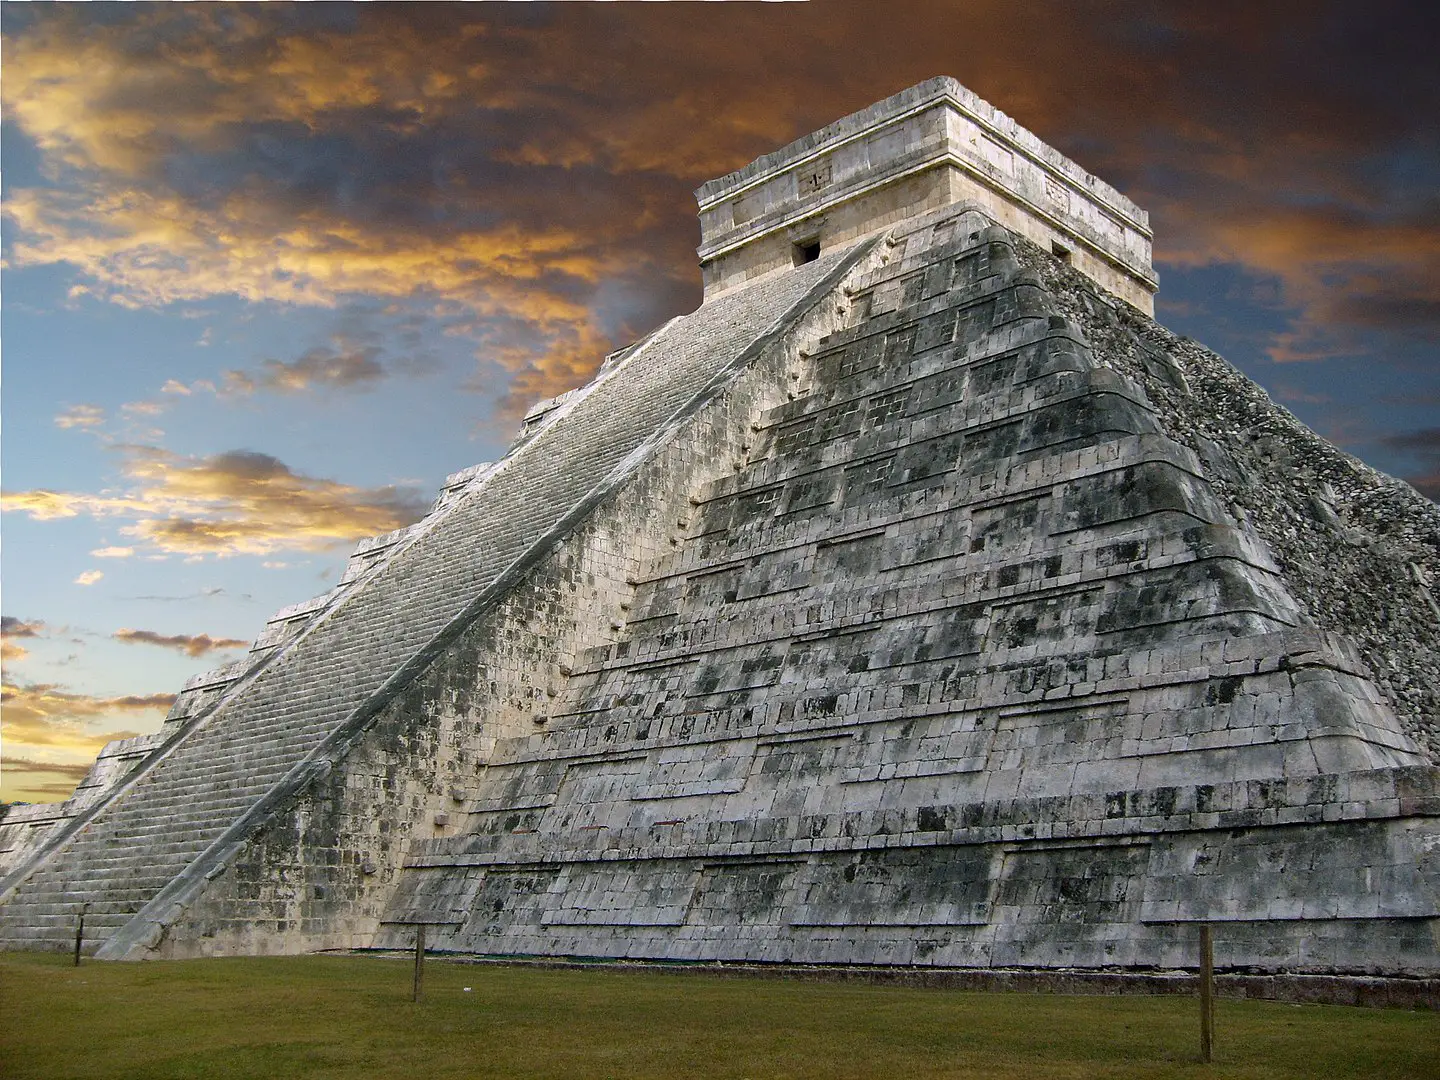 El misterio de la desaparición de la Civilización Maya, un fascinante enigma histórico -Revista Interesante